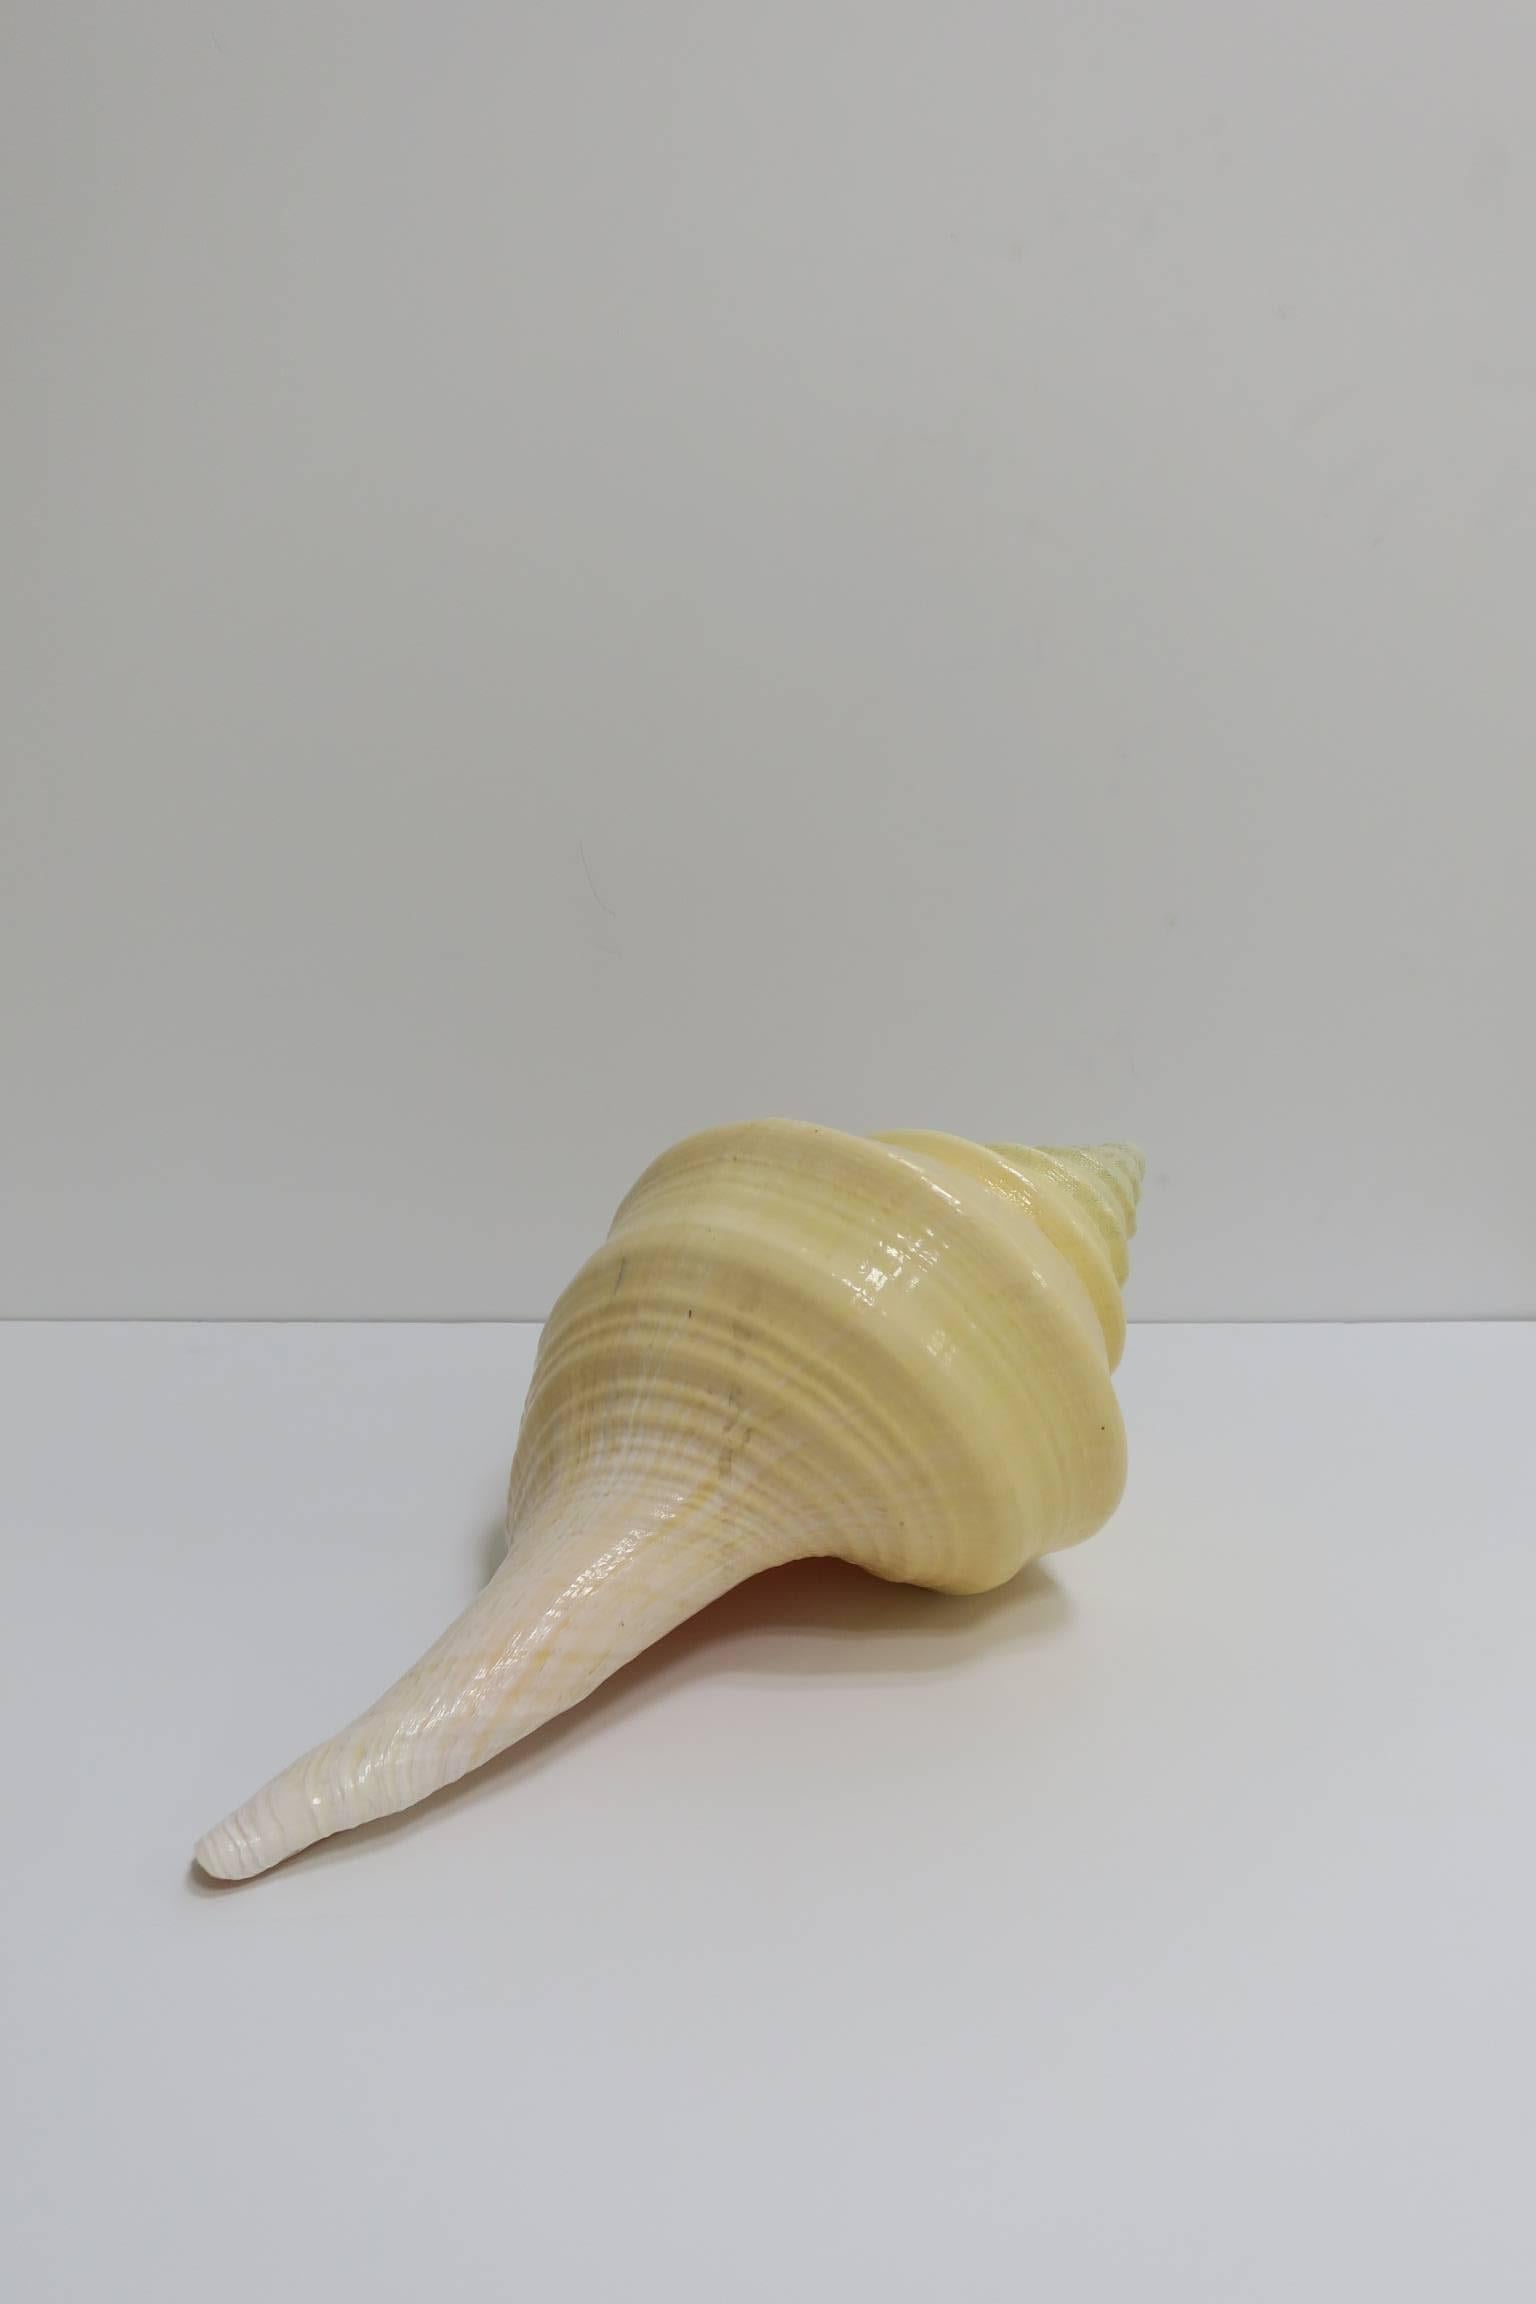 Shell Large Vintage Seashell